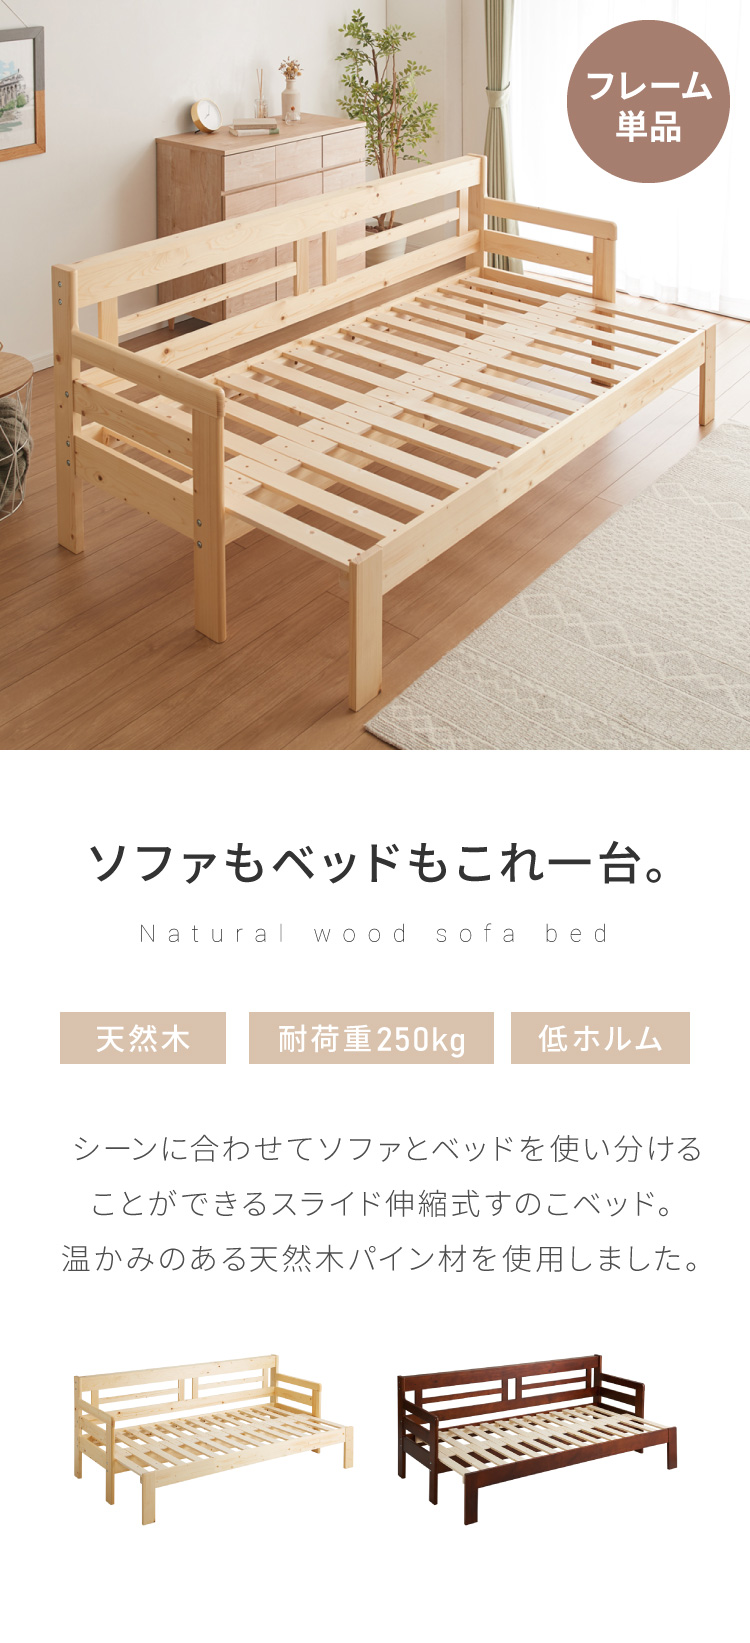 天然木 すのこ ソファベッド コンパクト ベッドフレーム ソファー ベッド 木製 シンプル おしゃれ 北欧 ソファのみ ソファ 伸縮式 伸縮できる  代引不可